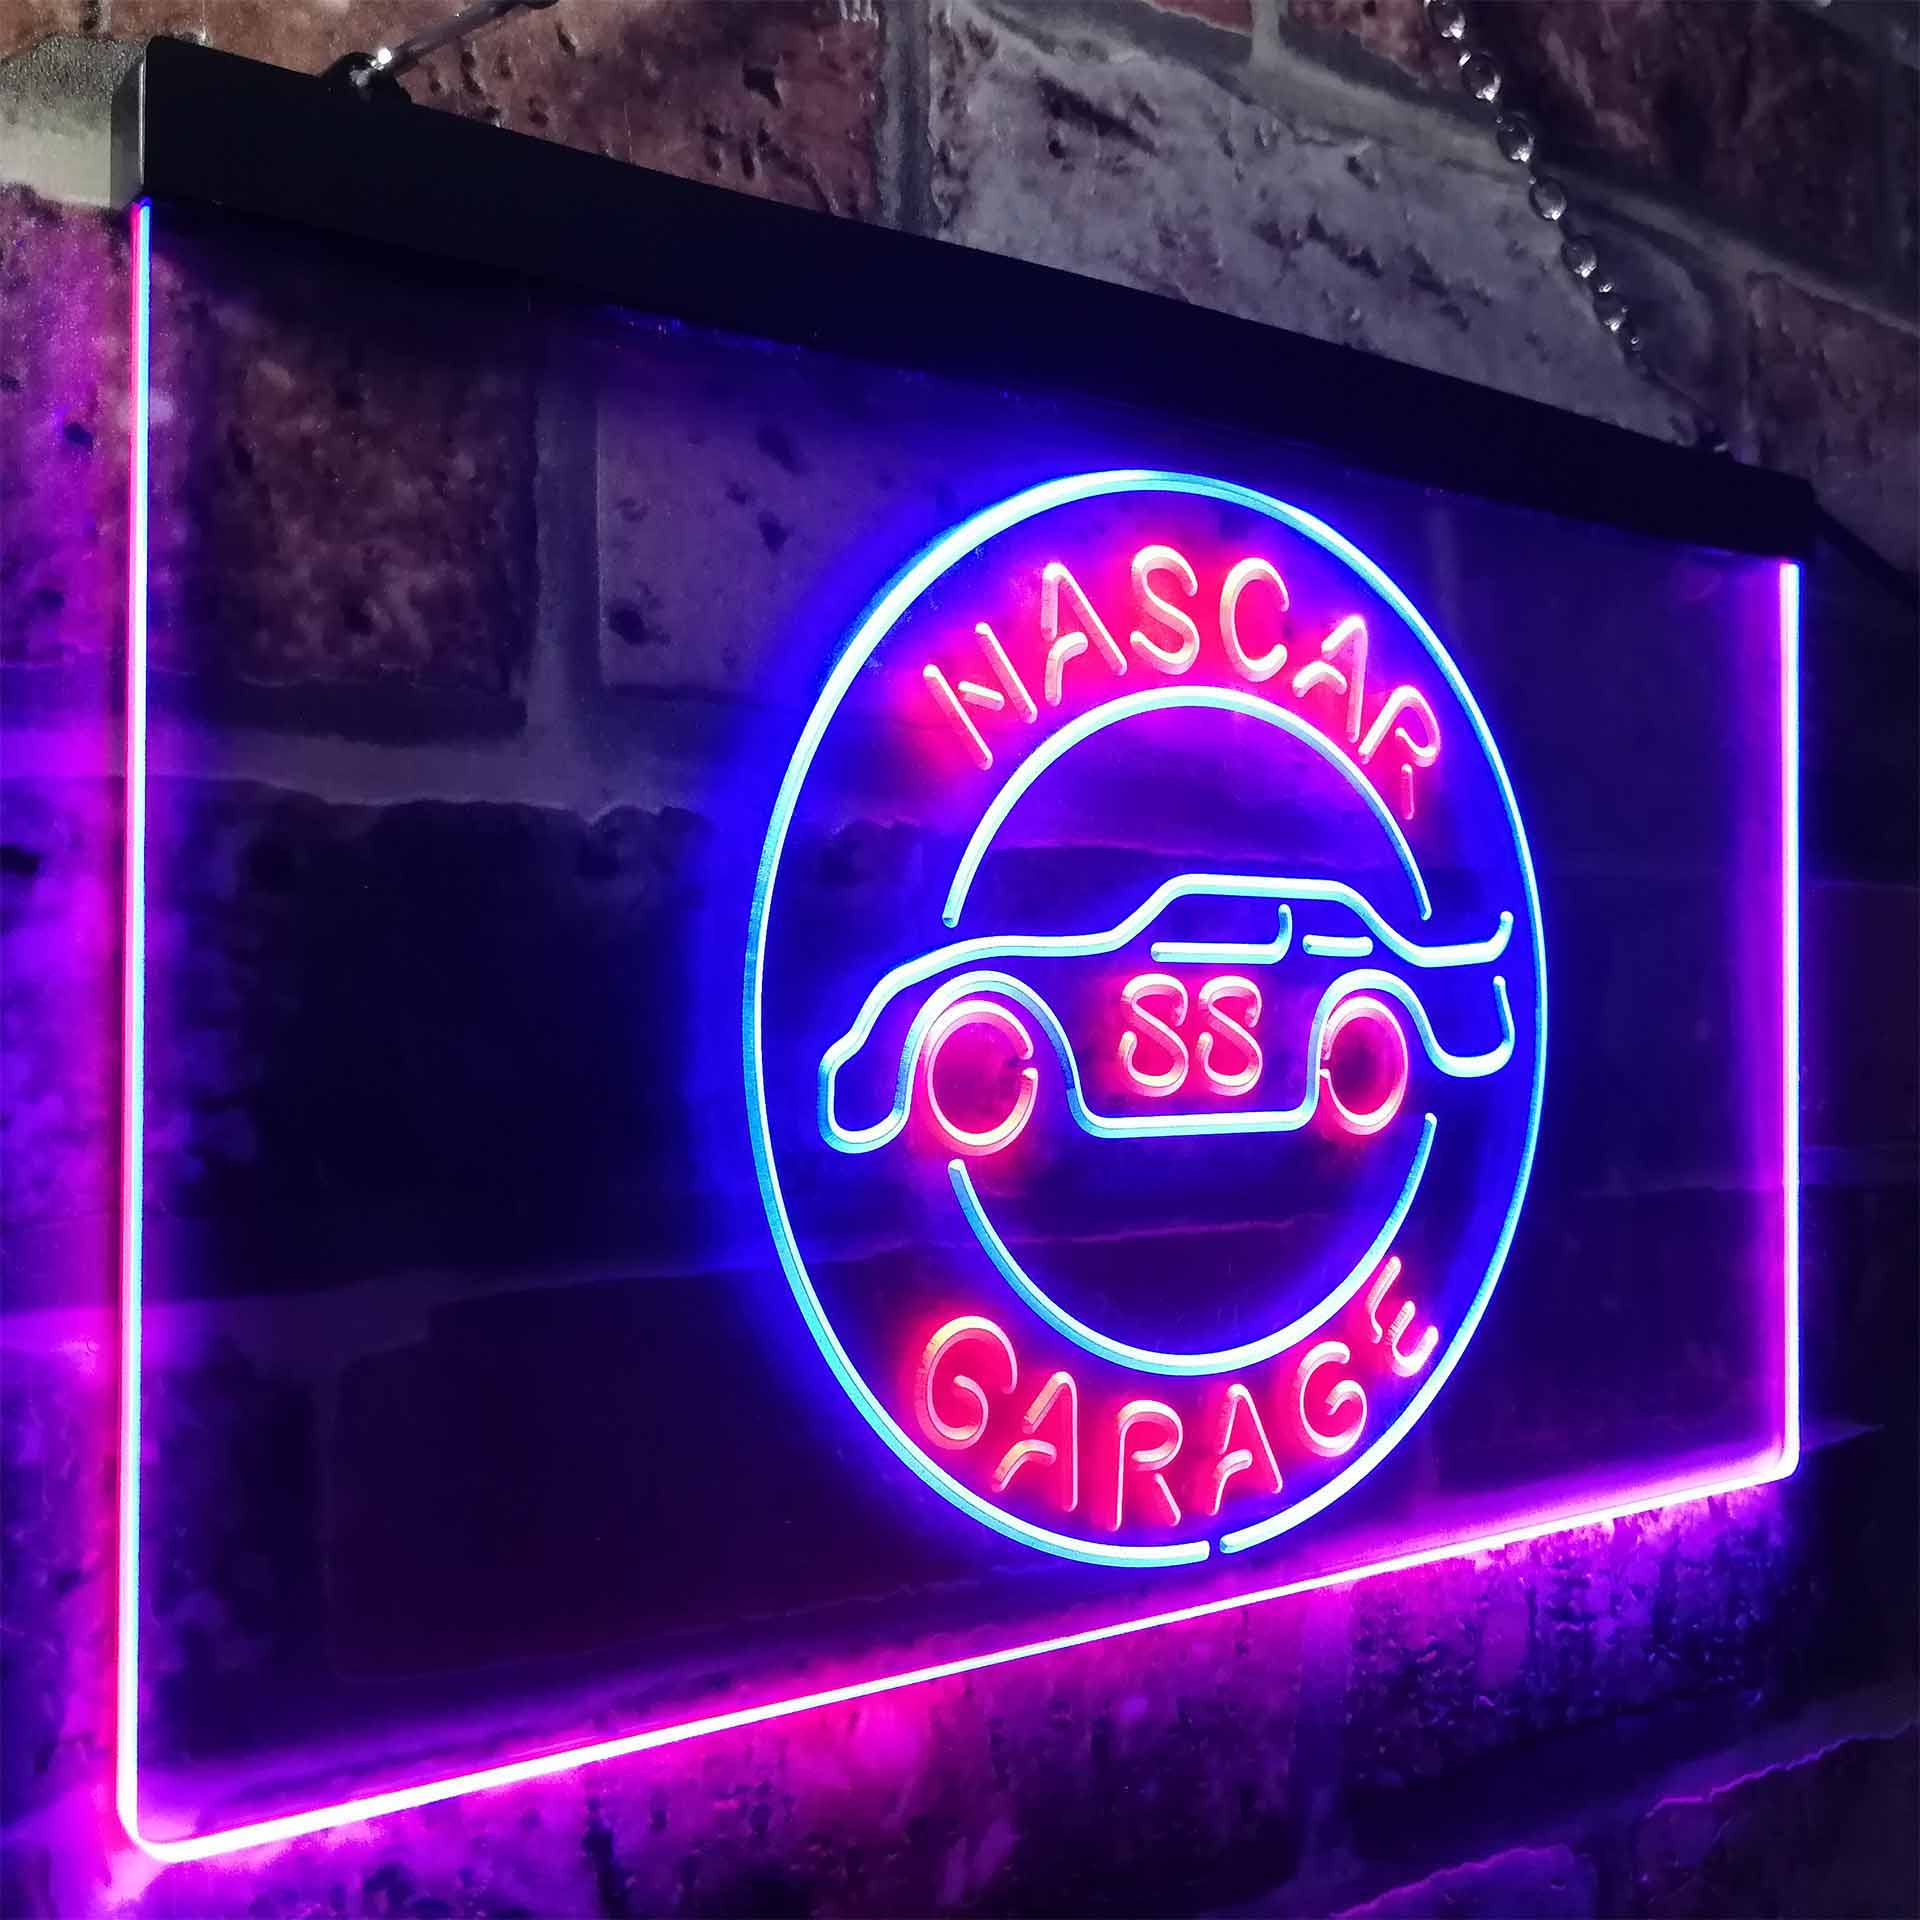 Nascar 88 Garage Dale Jr. Neon LED Sign